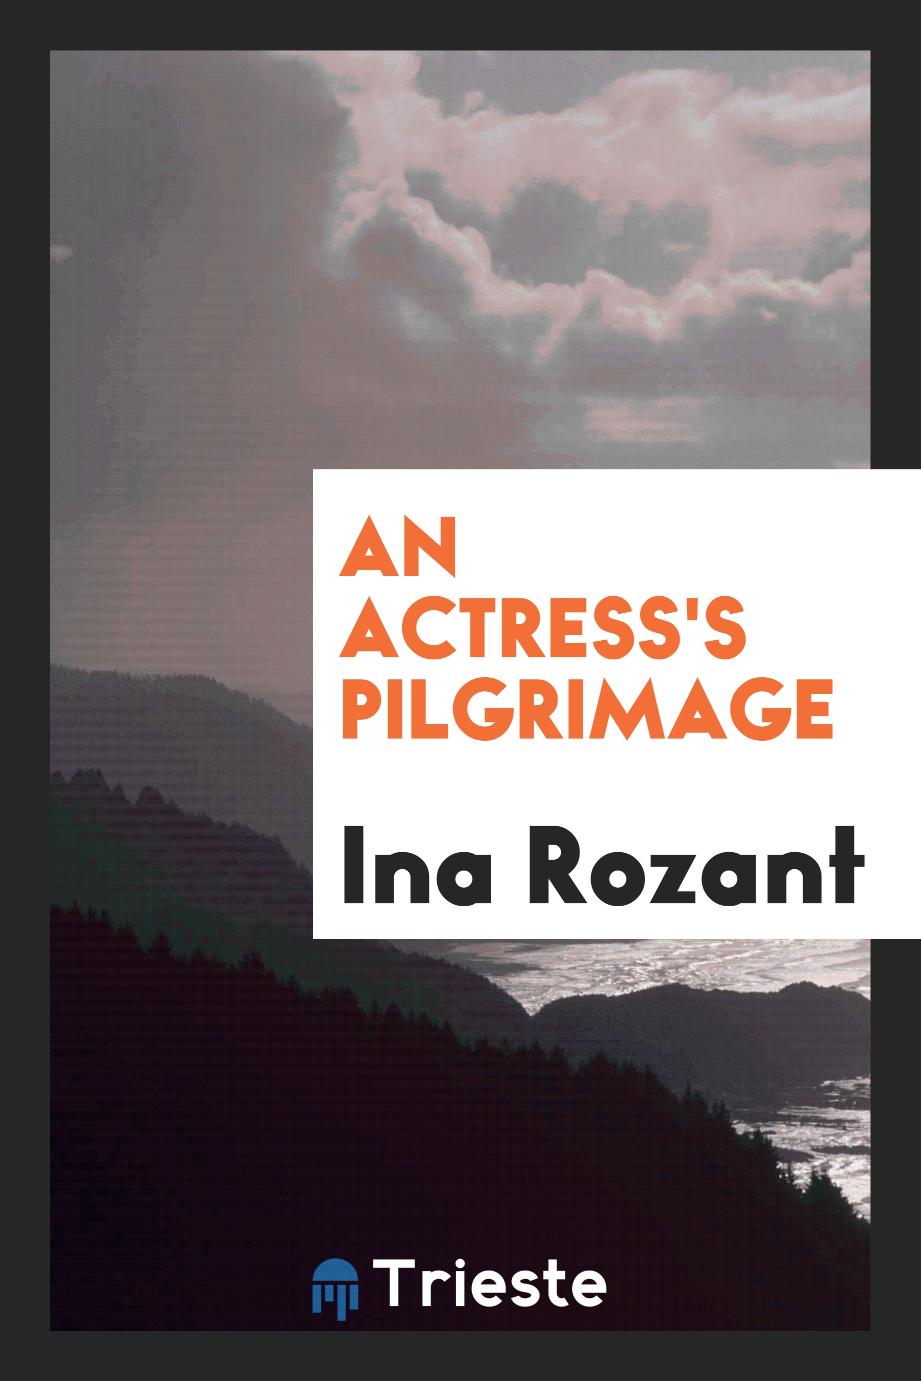 An Actress's Pilgrimage